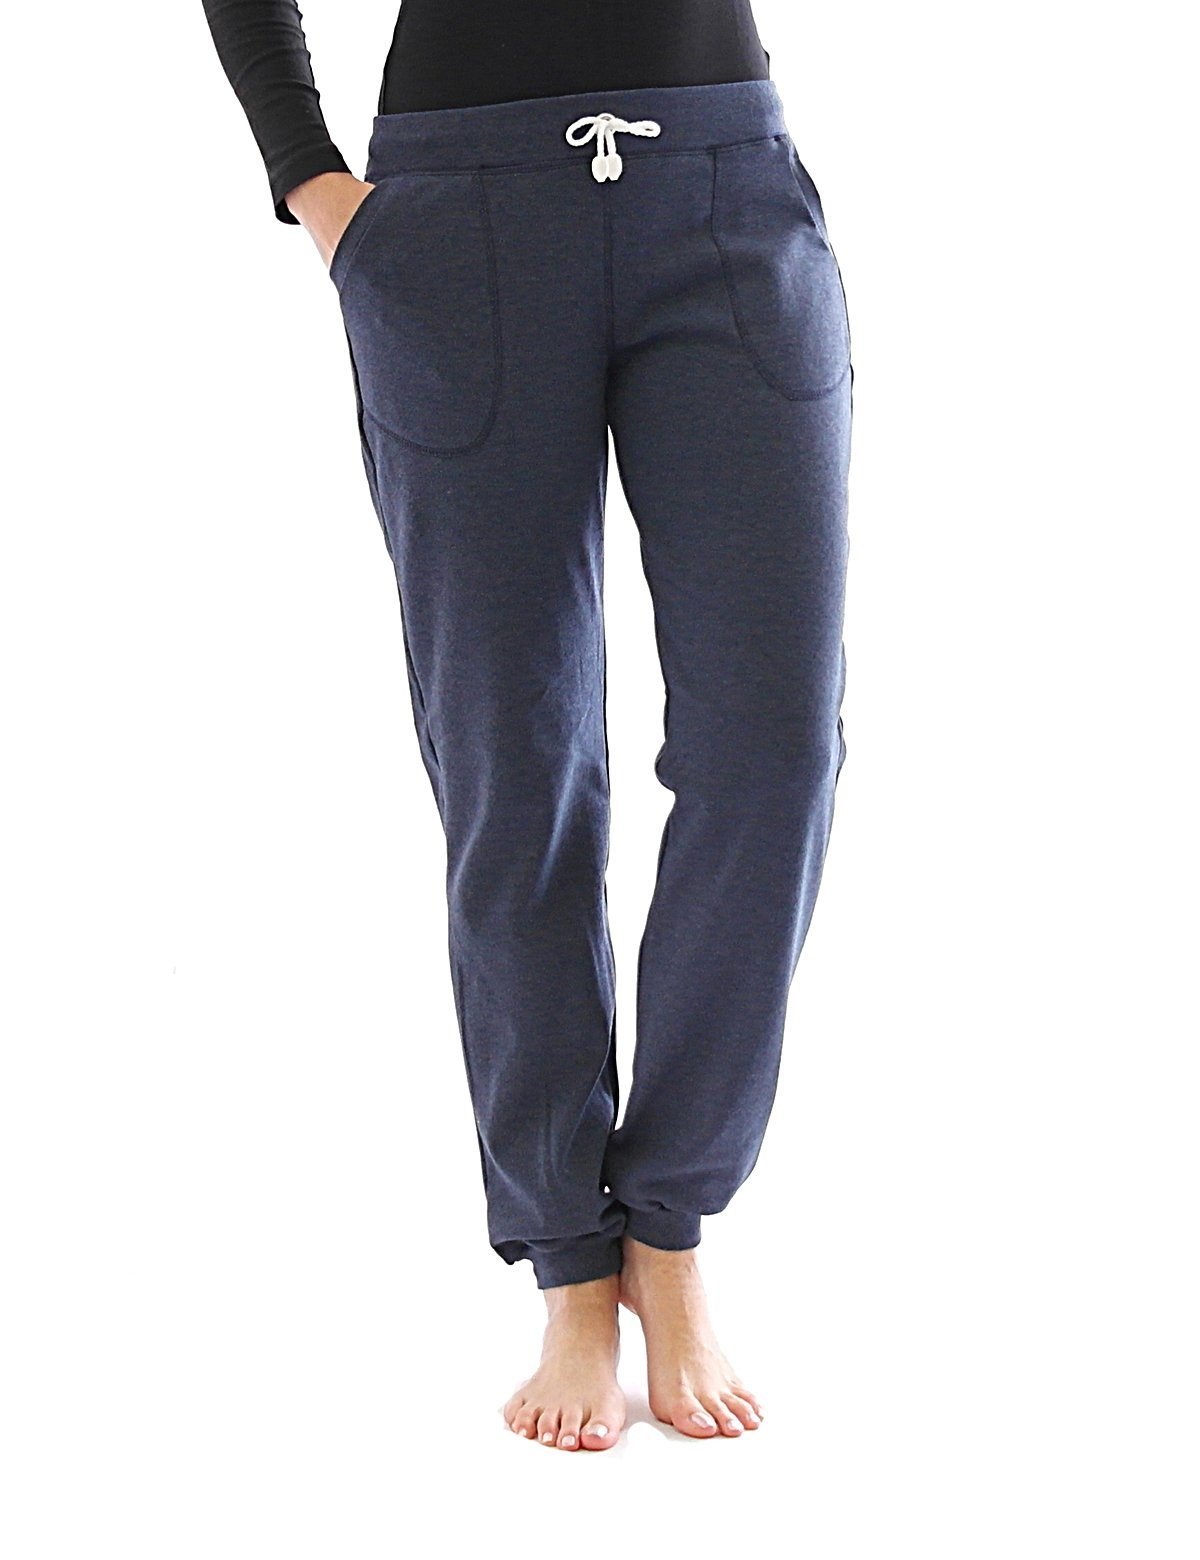 Jeans mit Gummibund online kaufen » Stretch Jeans | OTTO